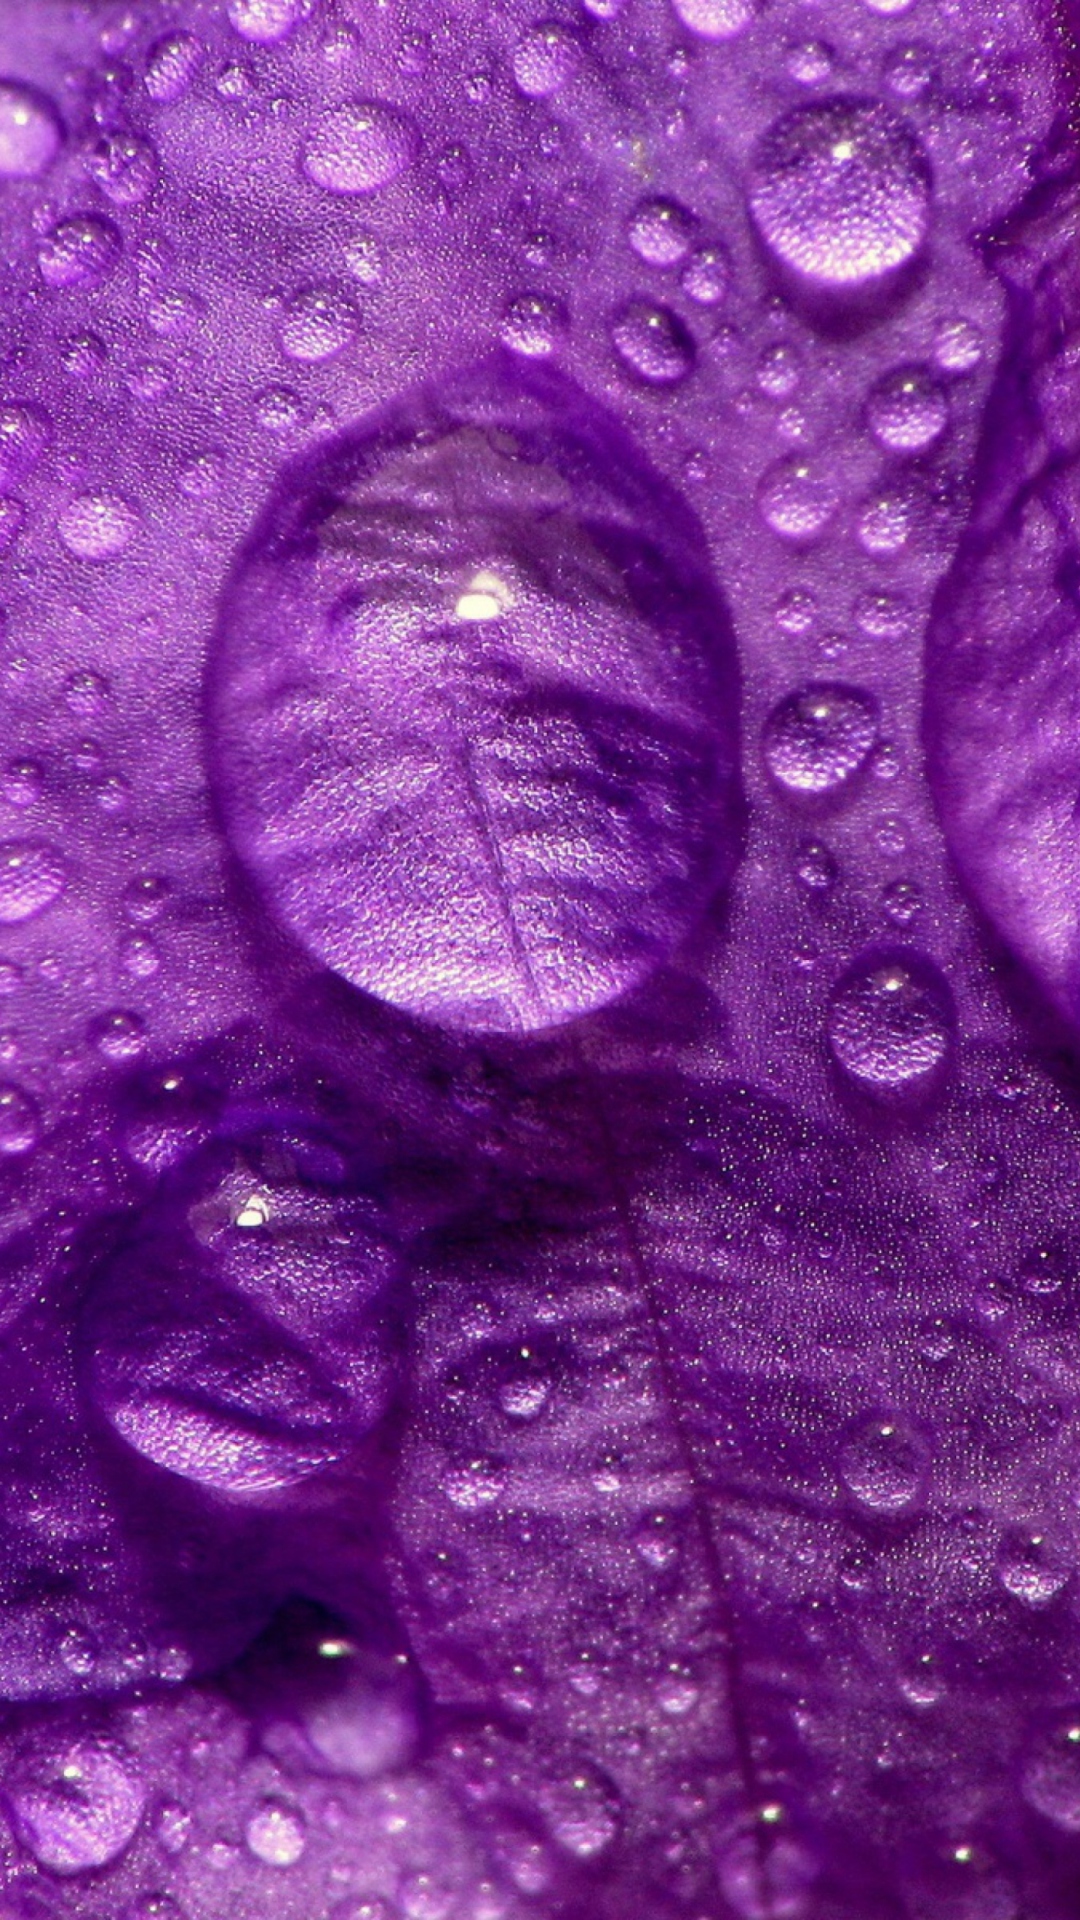 Dew Drops On Violet Petals screenshot #1 1080x1920